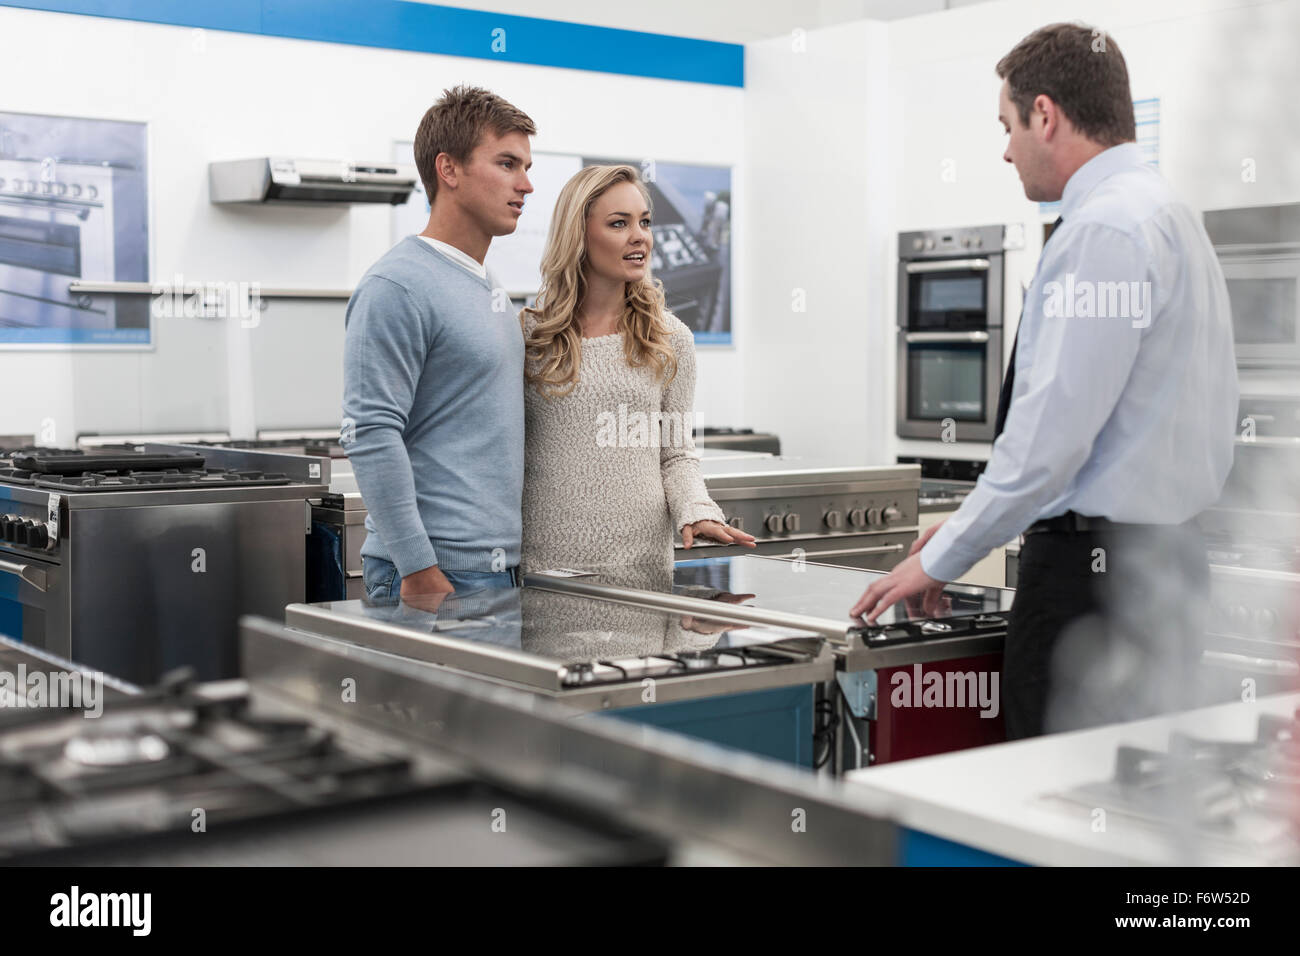 Verkäuferin im Gespräch mit junge Paar einkaufen Küchenausstattung Stockfoto